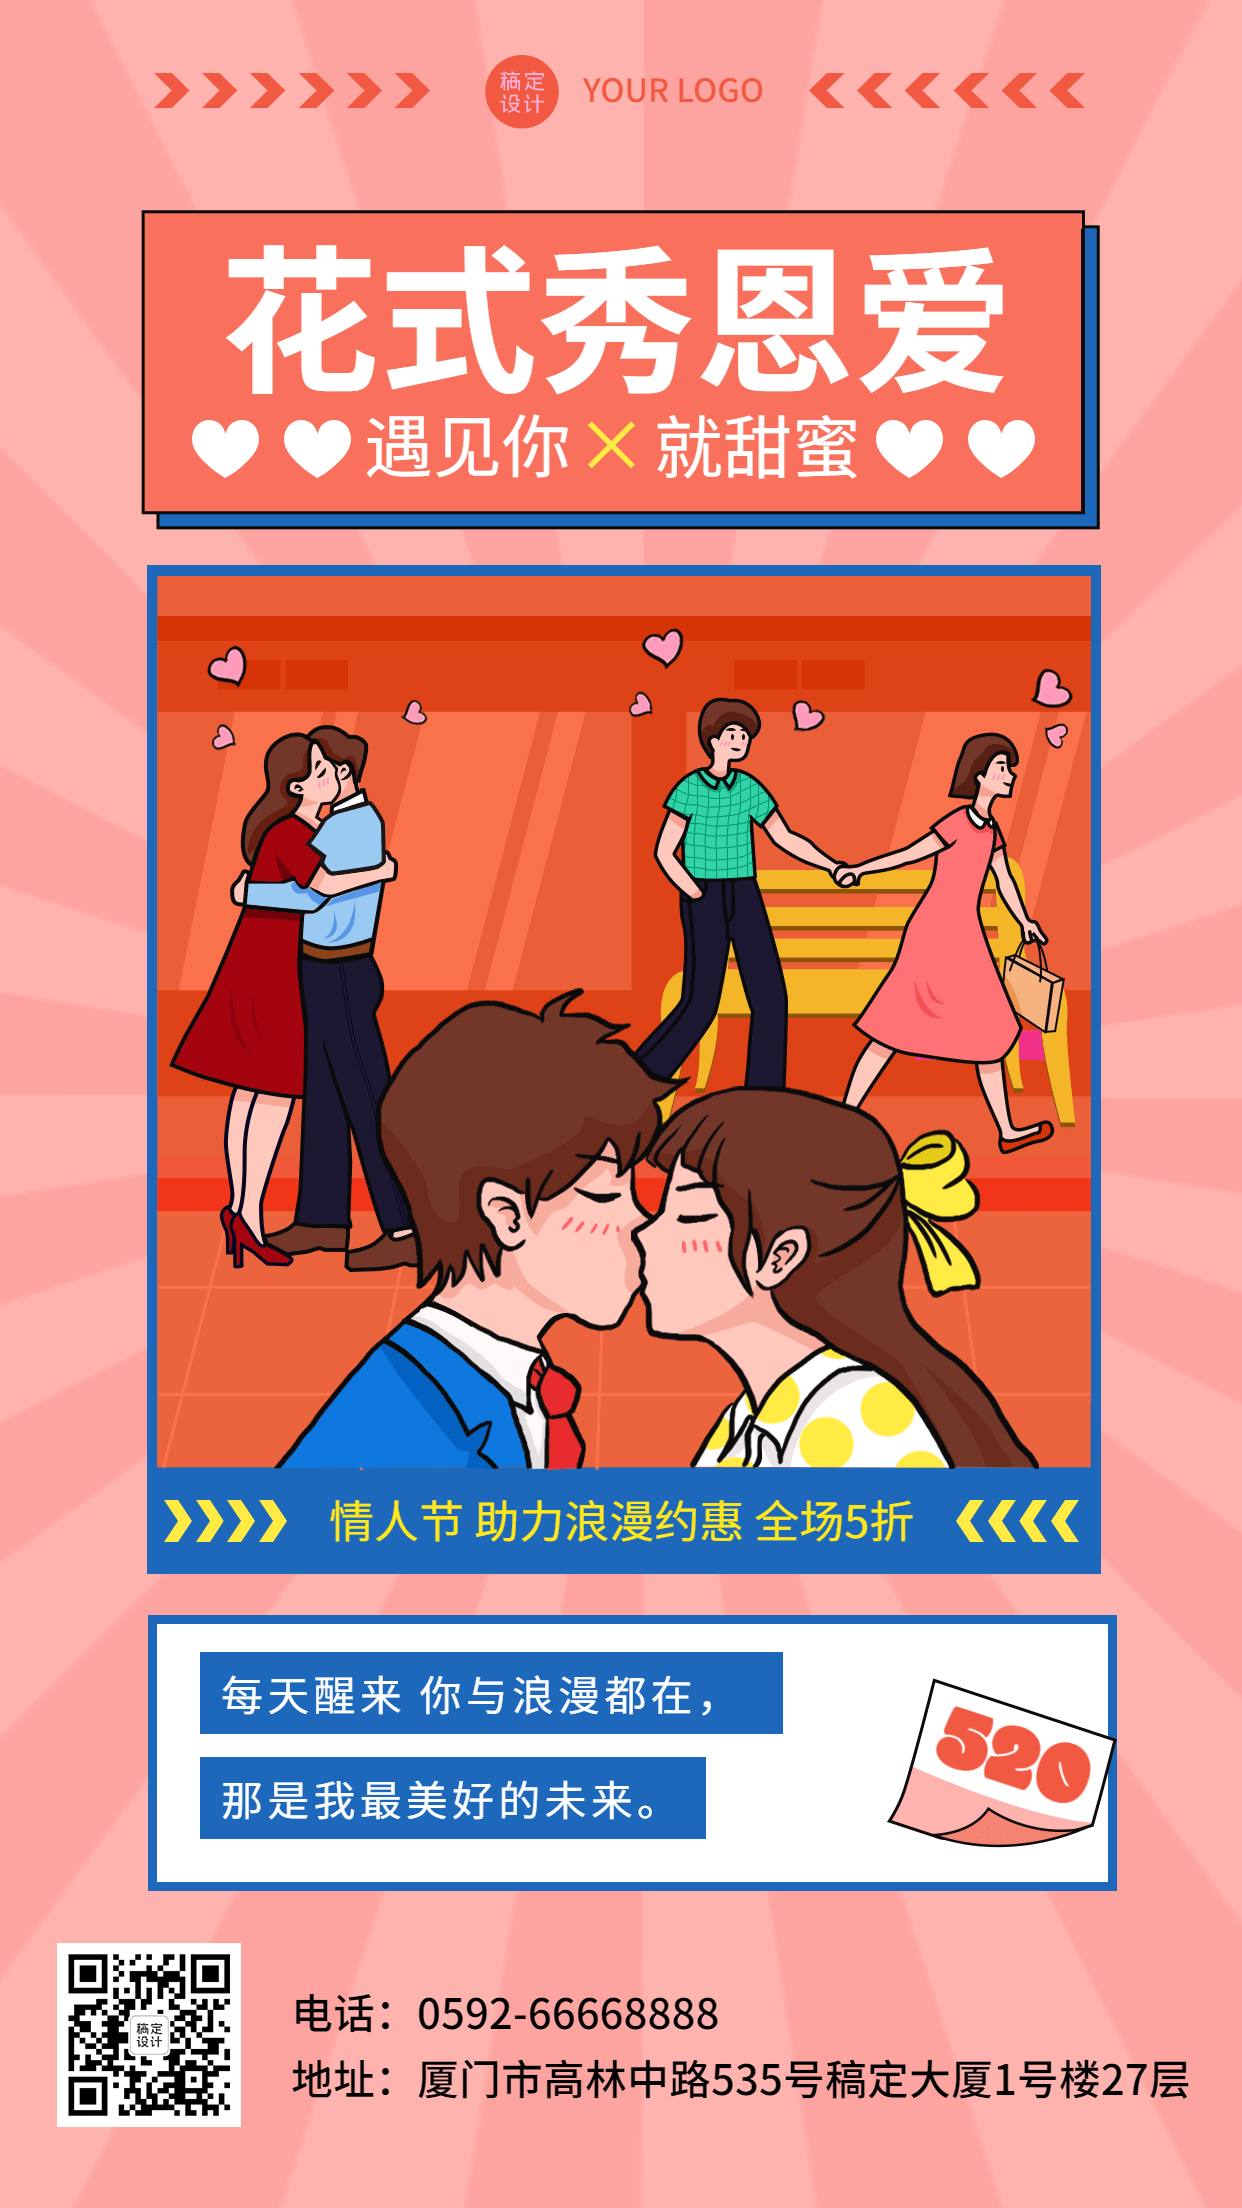 520情人节节日营销折扣活动插画手机海报